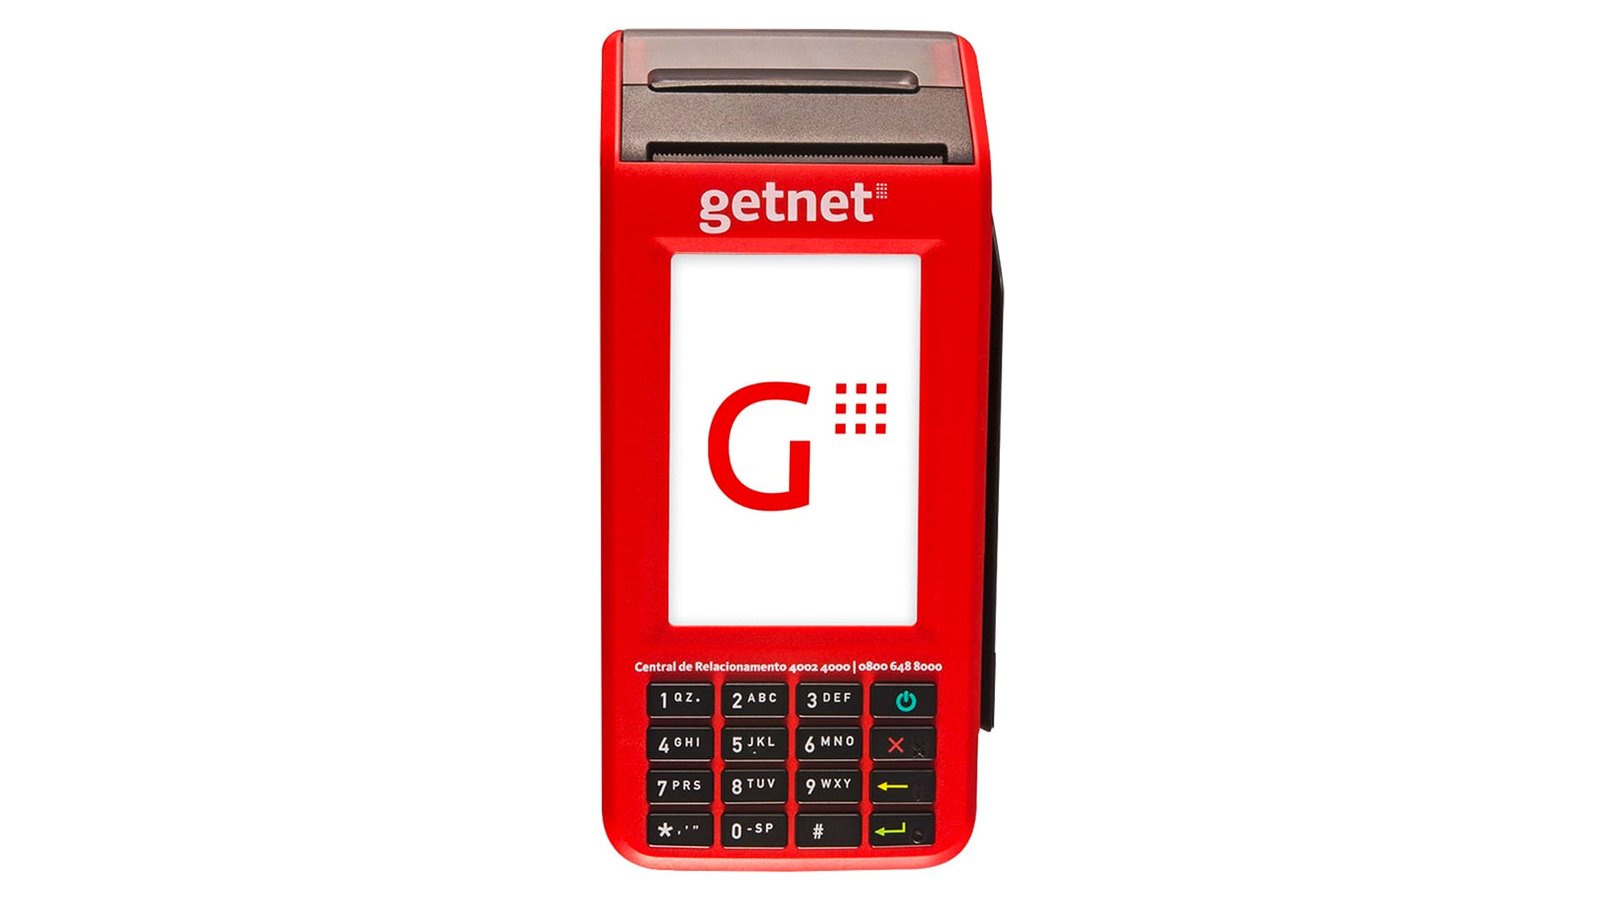 Como funciona a maquininha de cartão da Getnet?